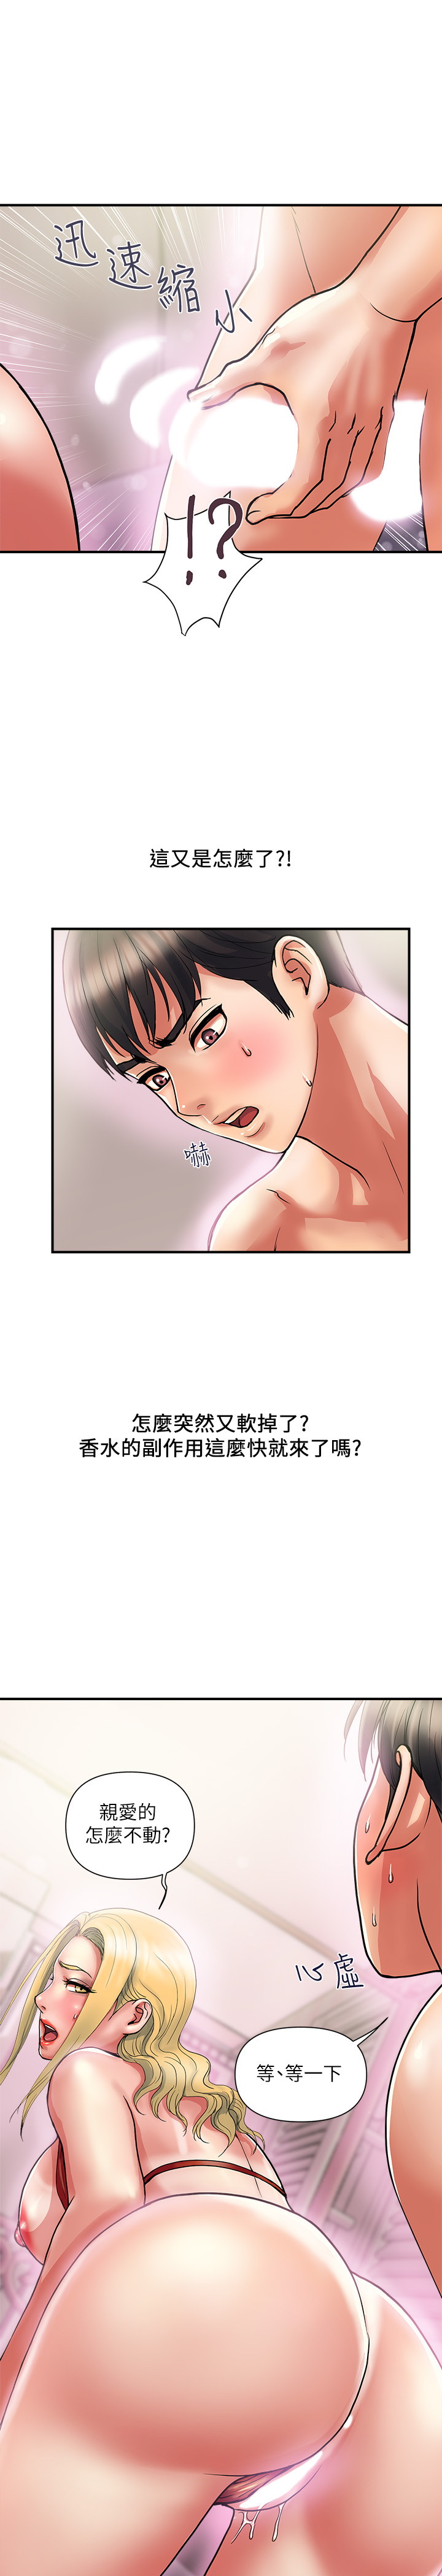 韩国污漫画 行走費洛蒙 第13话 9